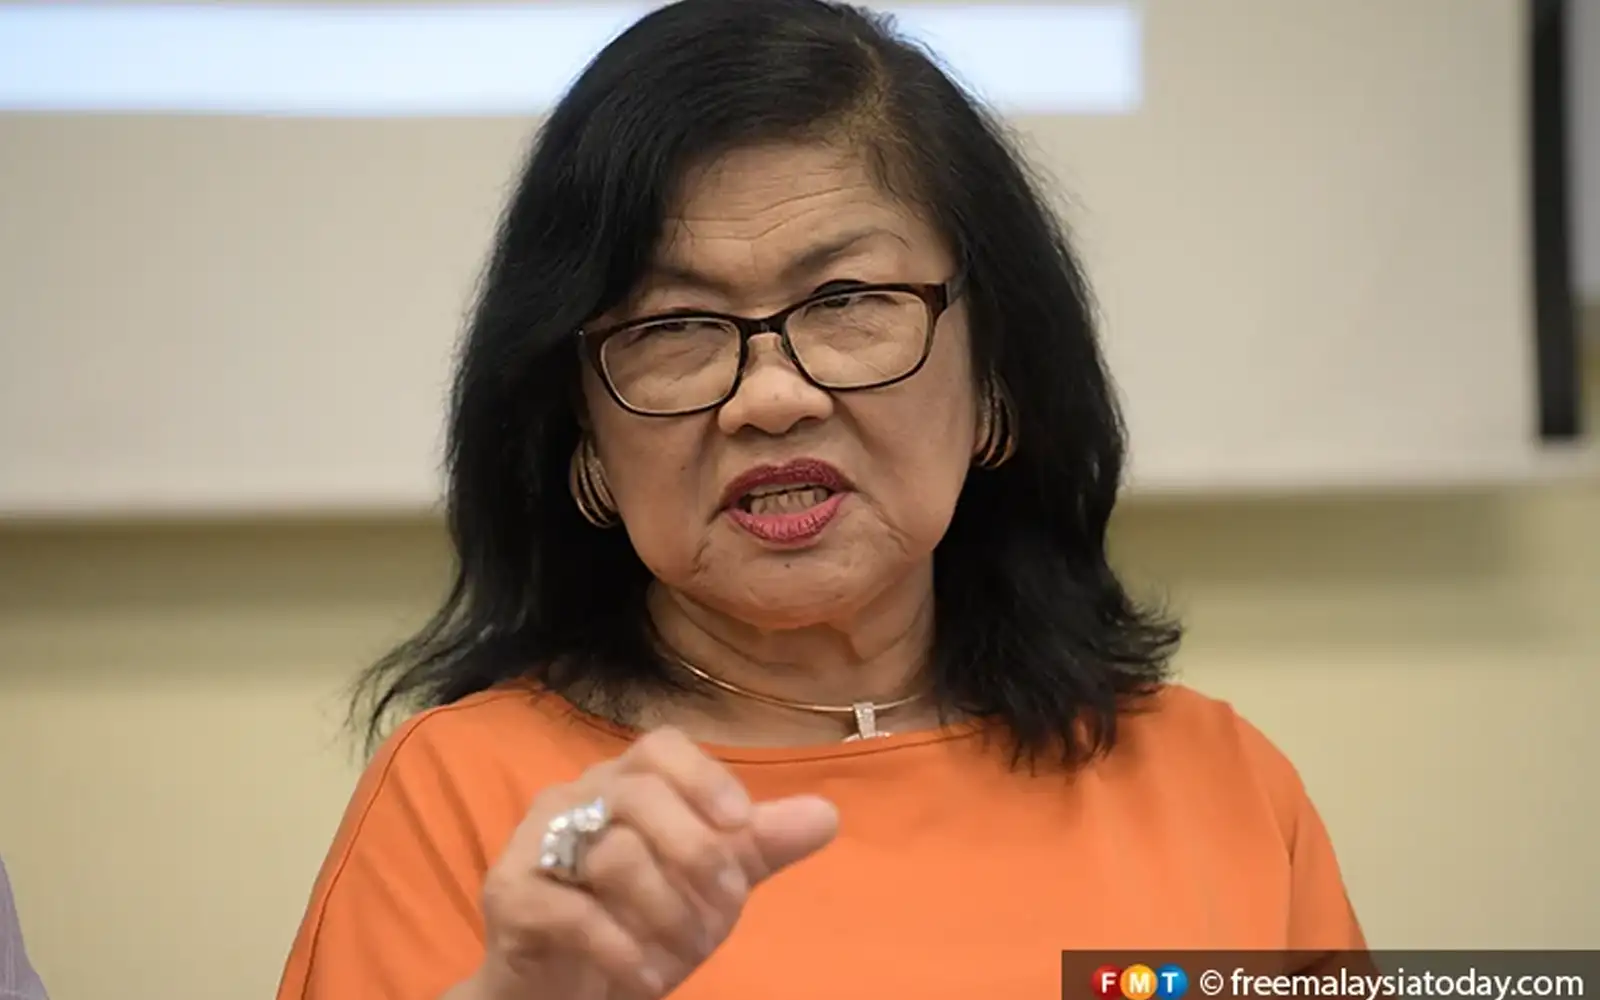 rein in little napoleons, rafidah tells govt